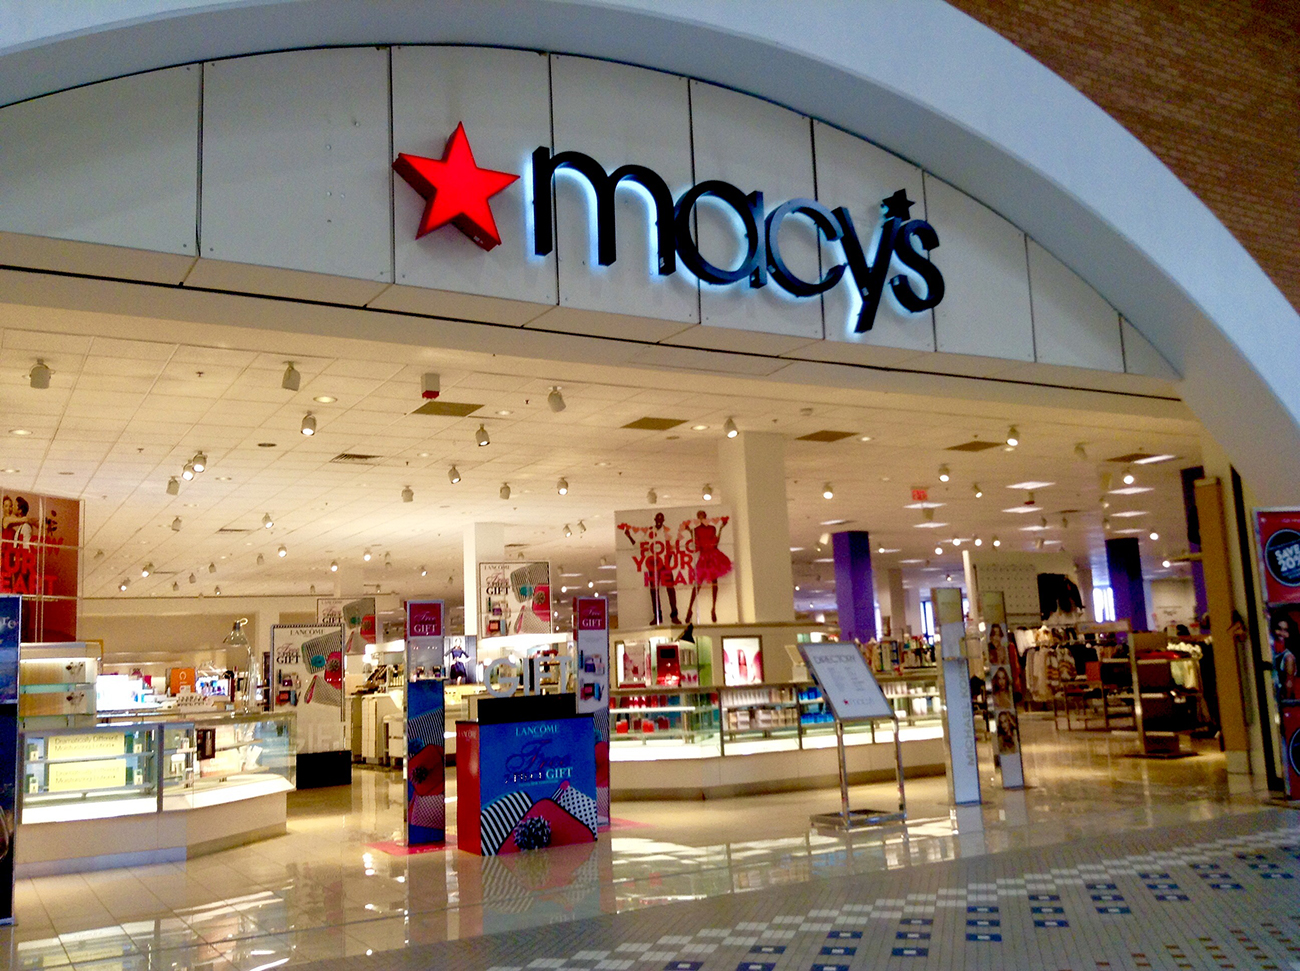 La photographie montre l'entrée bien éclairée d'un grand magasin Macy's.